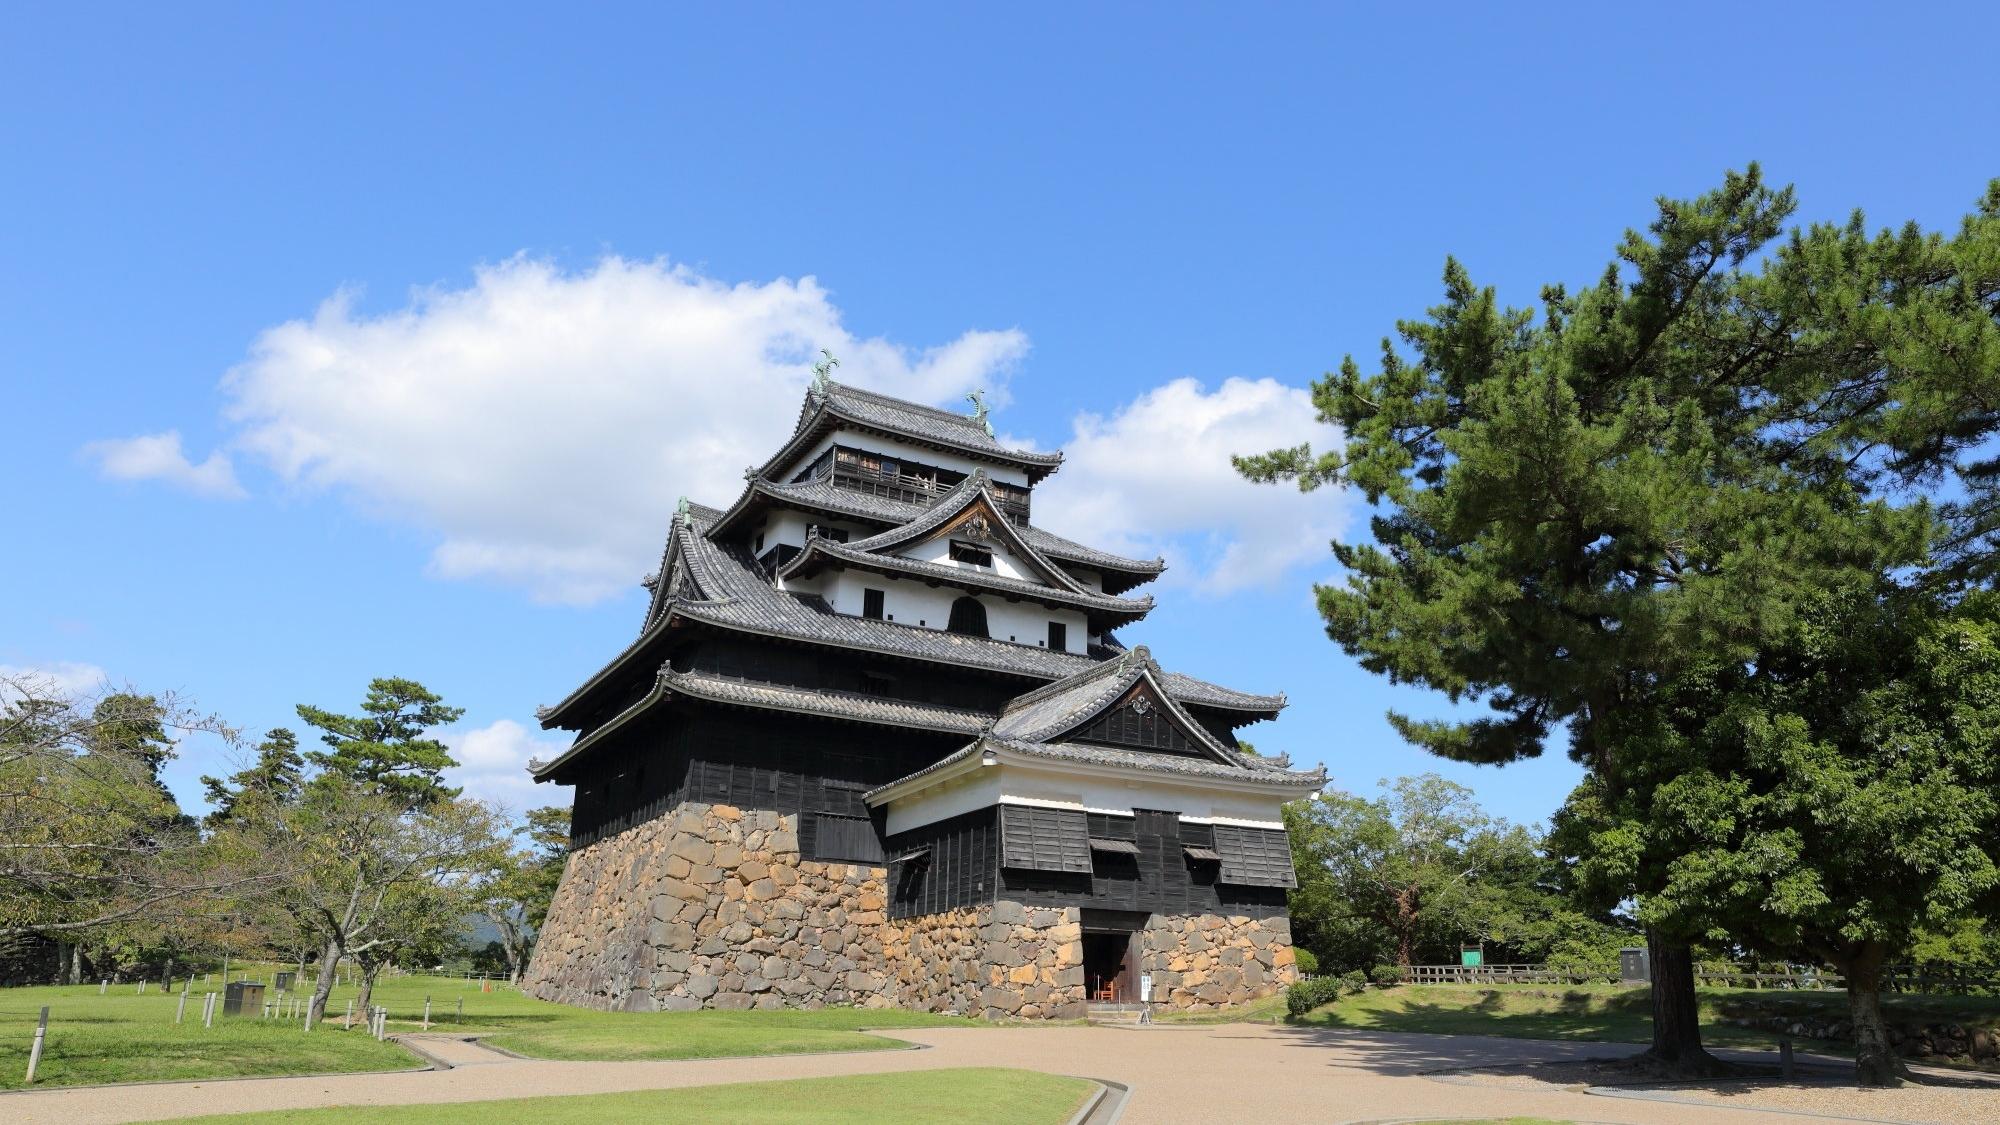 【松江城】夏の空に雄大にそびえたつ松江城。